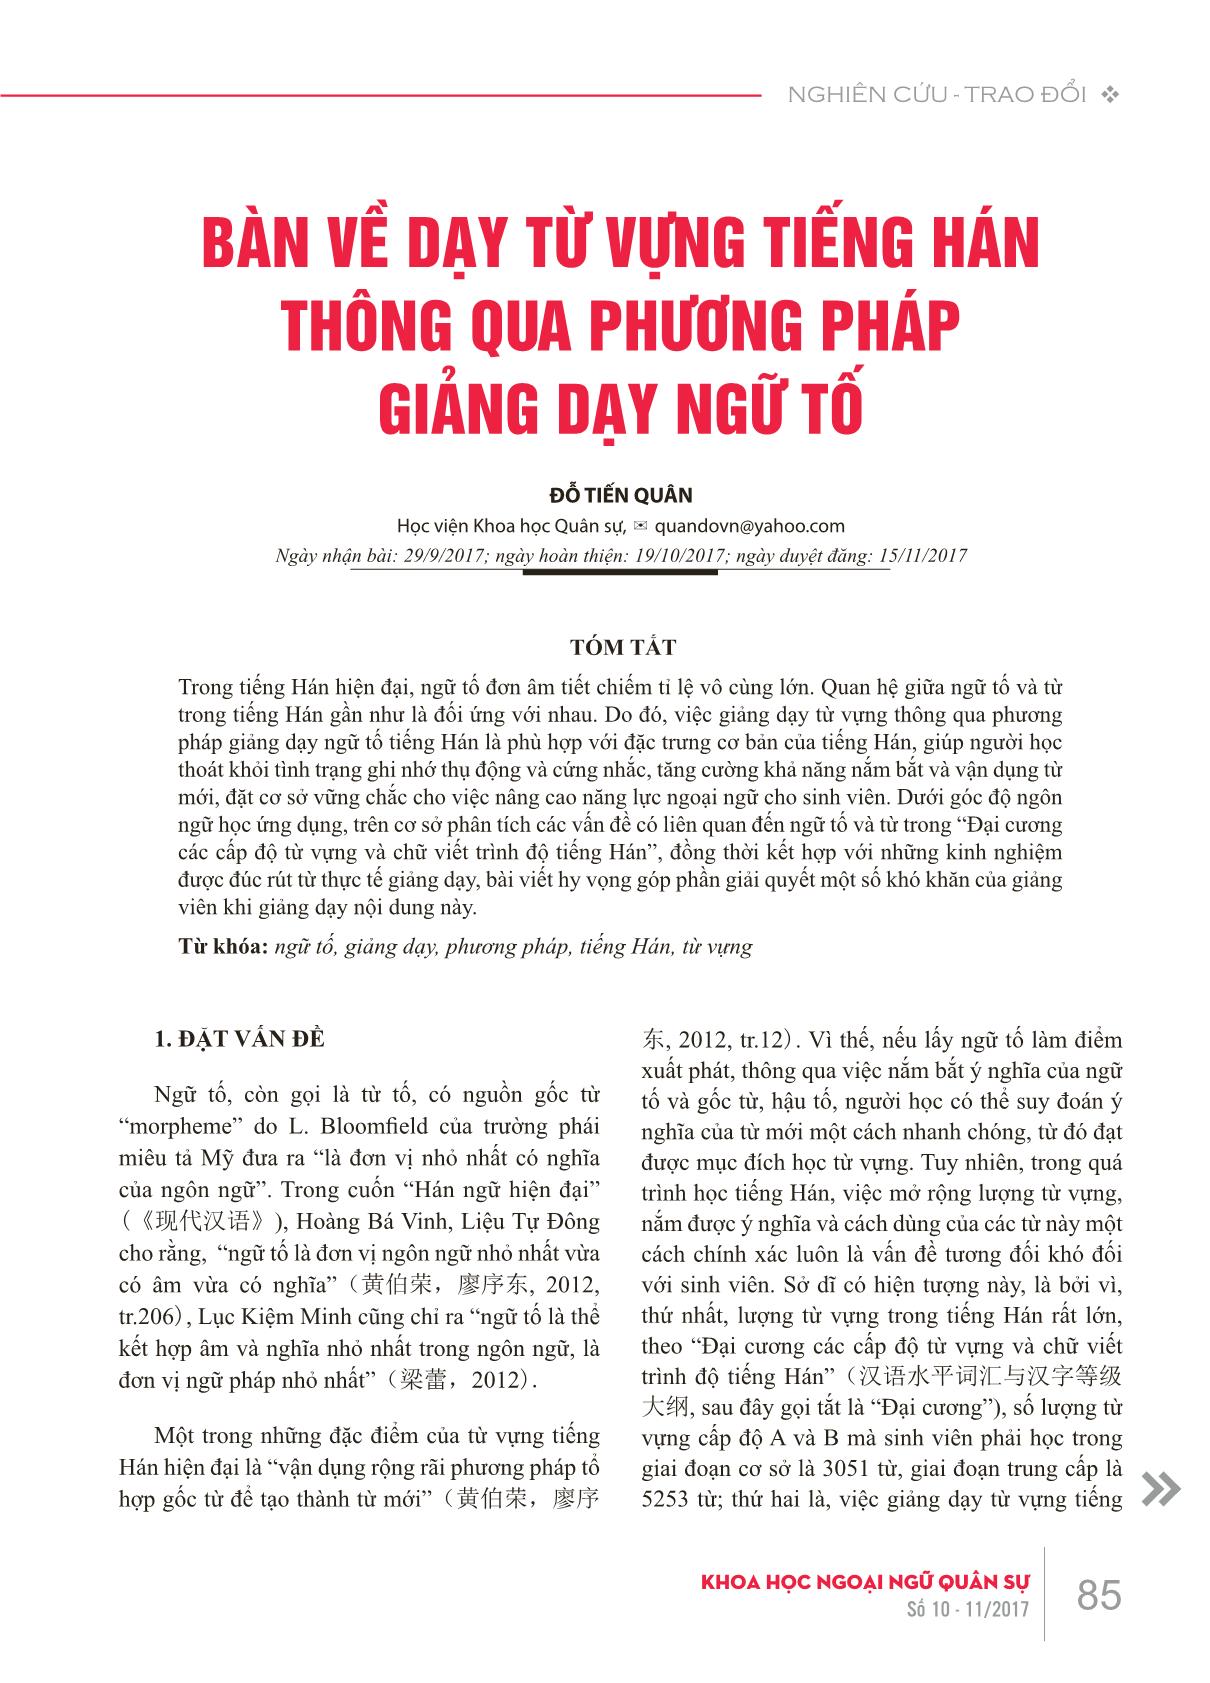 Bàn về dạy từ vựng tiếng Hán thông qua phương pháp giảng dạy ngữ tố trang 1